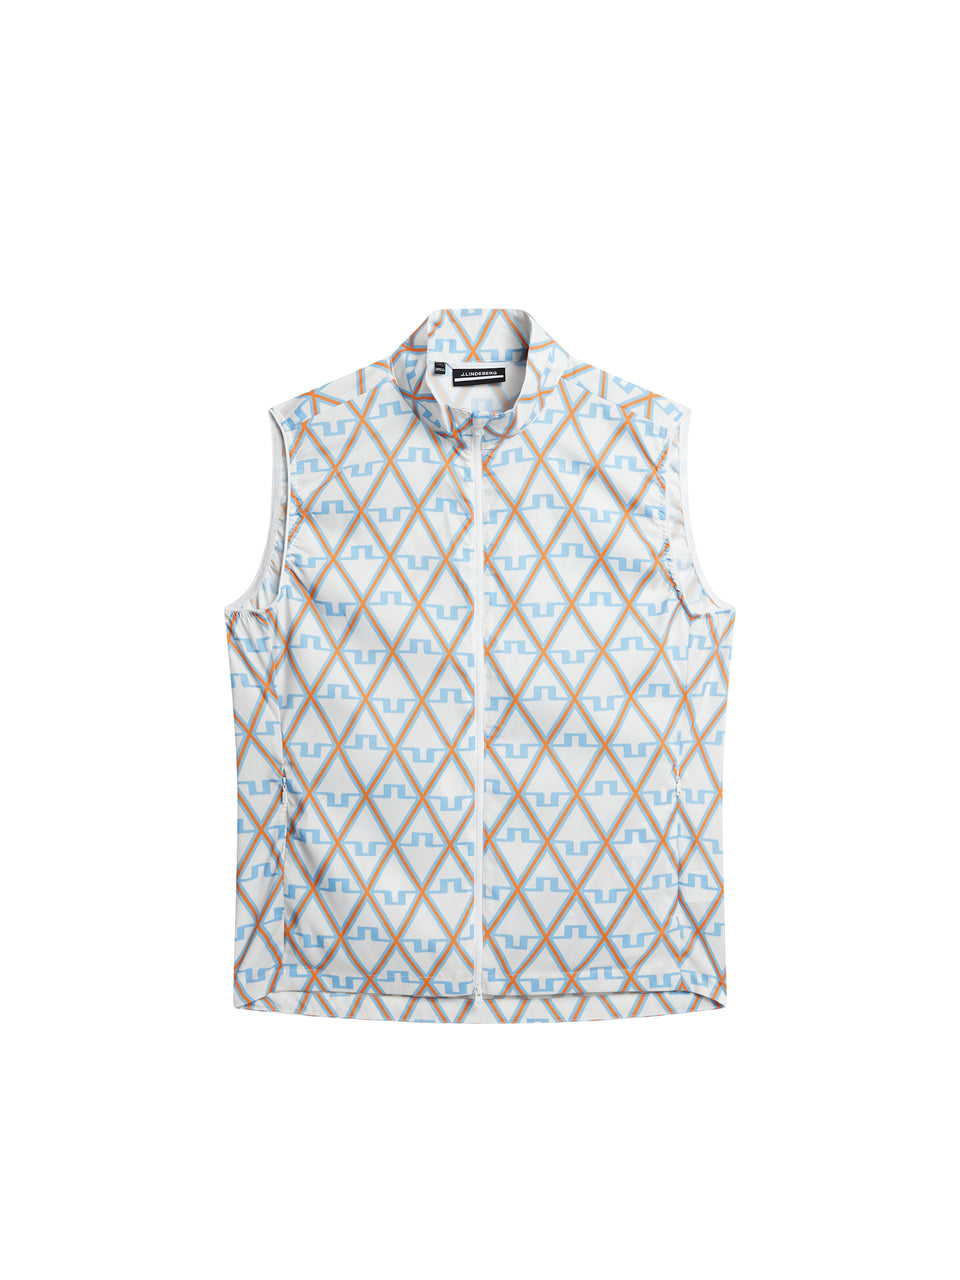 Ash Light Packable Vest Print / Little Boy Blue Diamond